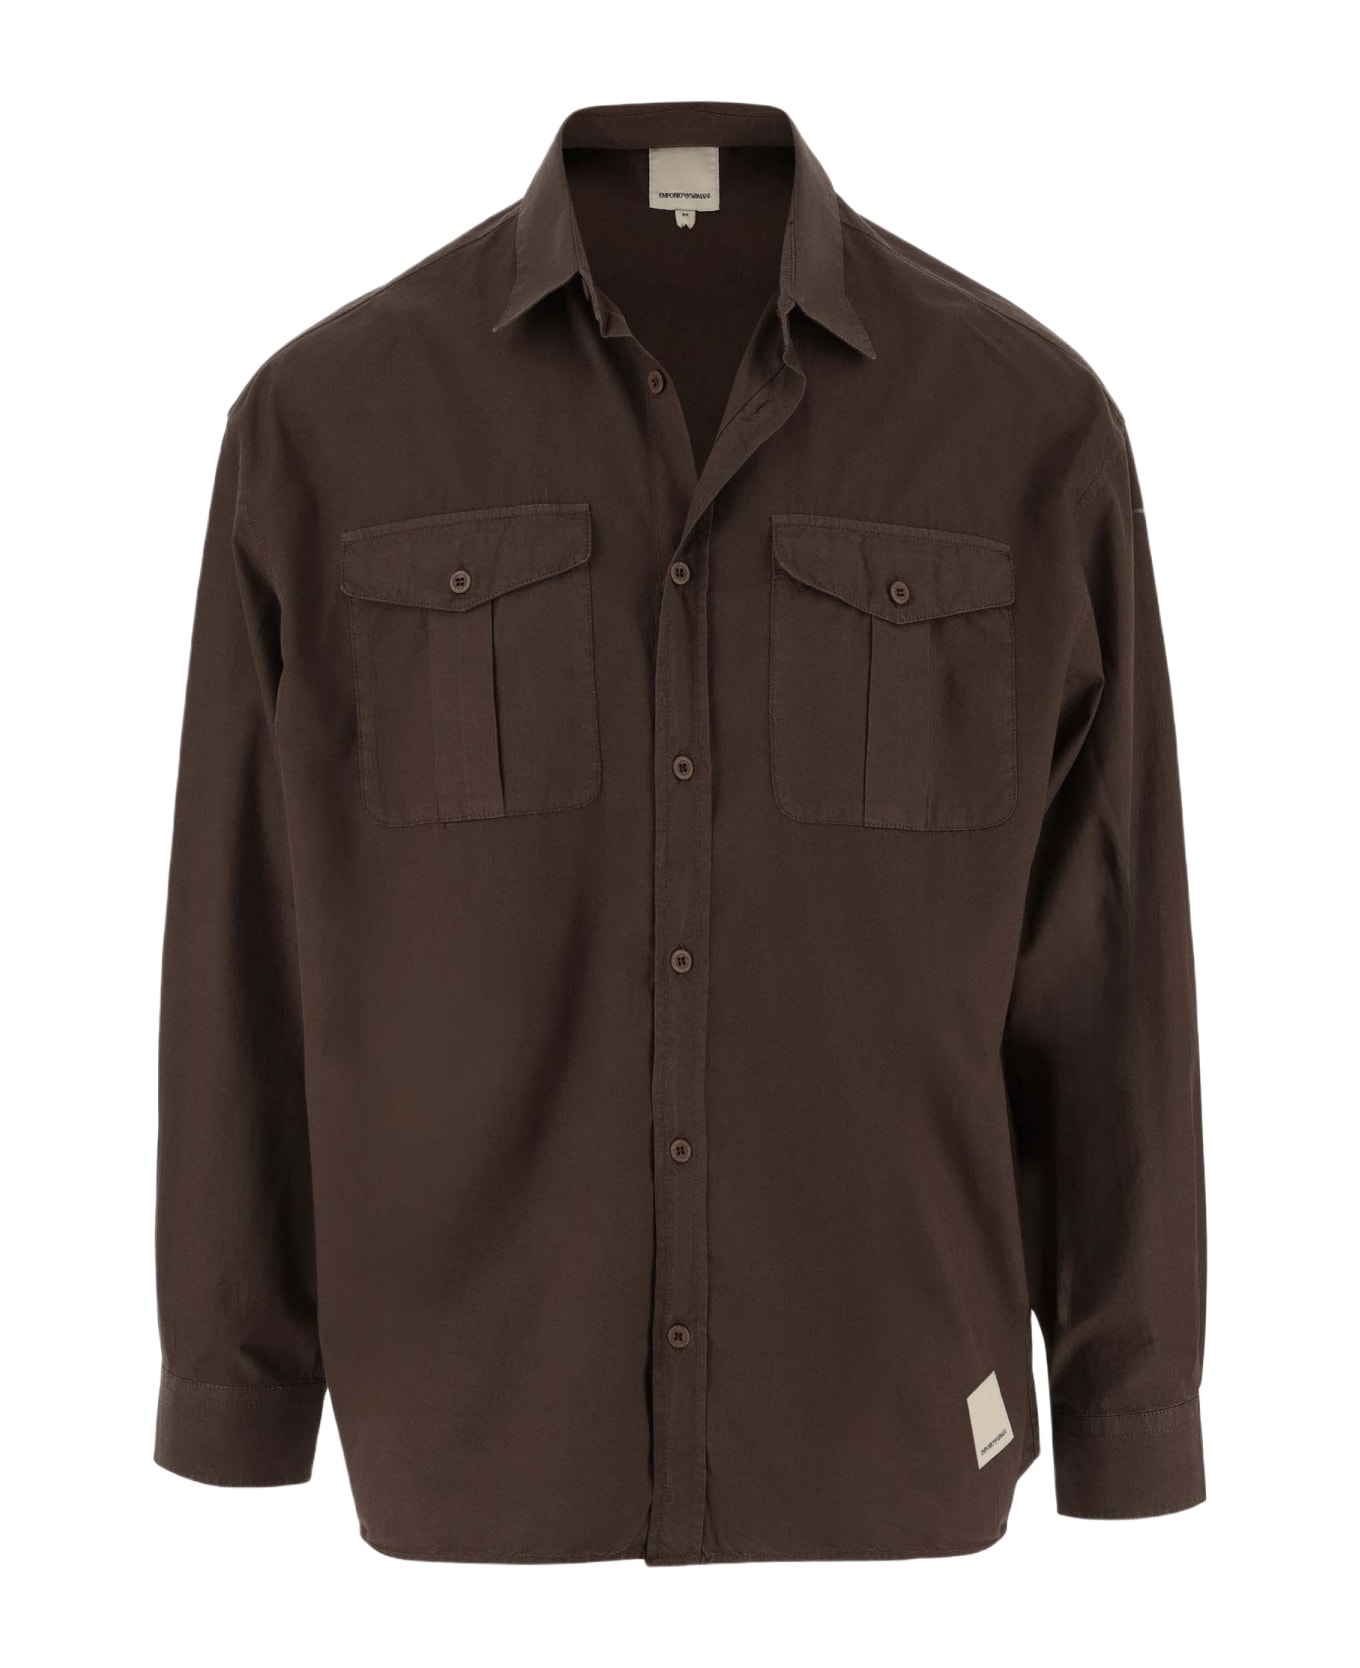 Emporio Armani Cotton Shirt - Brown